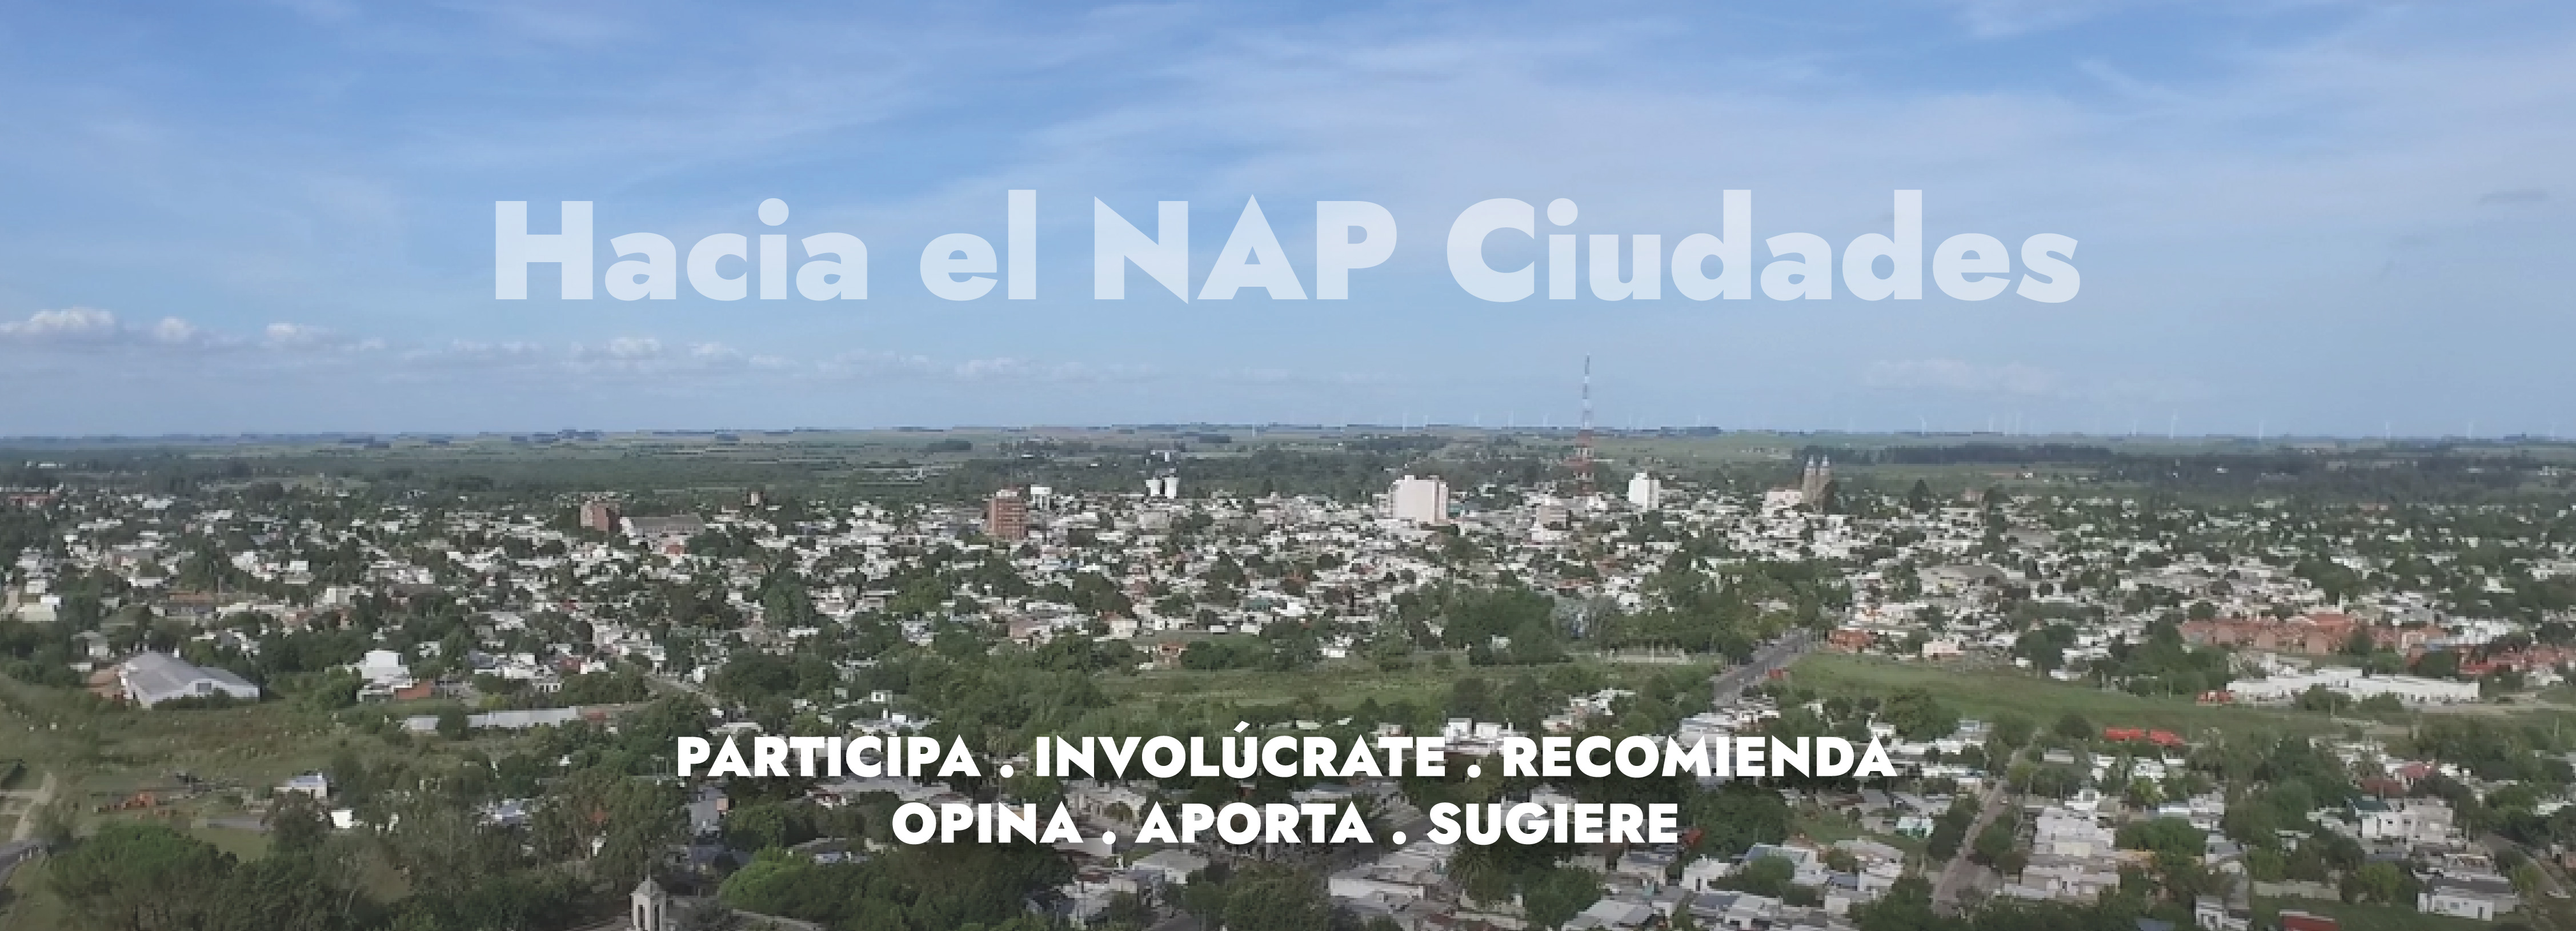 imegen de ciudad que dice Hacia el NAP Ciudades: Participa, Involúcrate, Recomienda, Opina, Aporta, Sugiere 